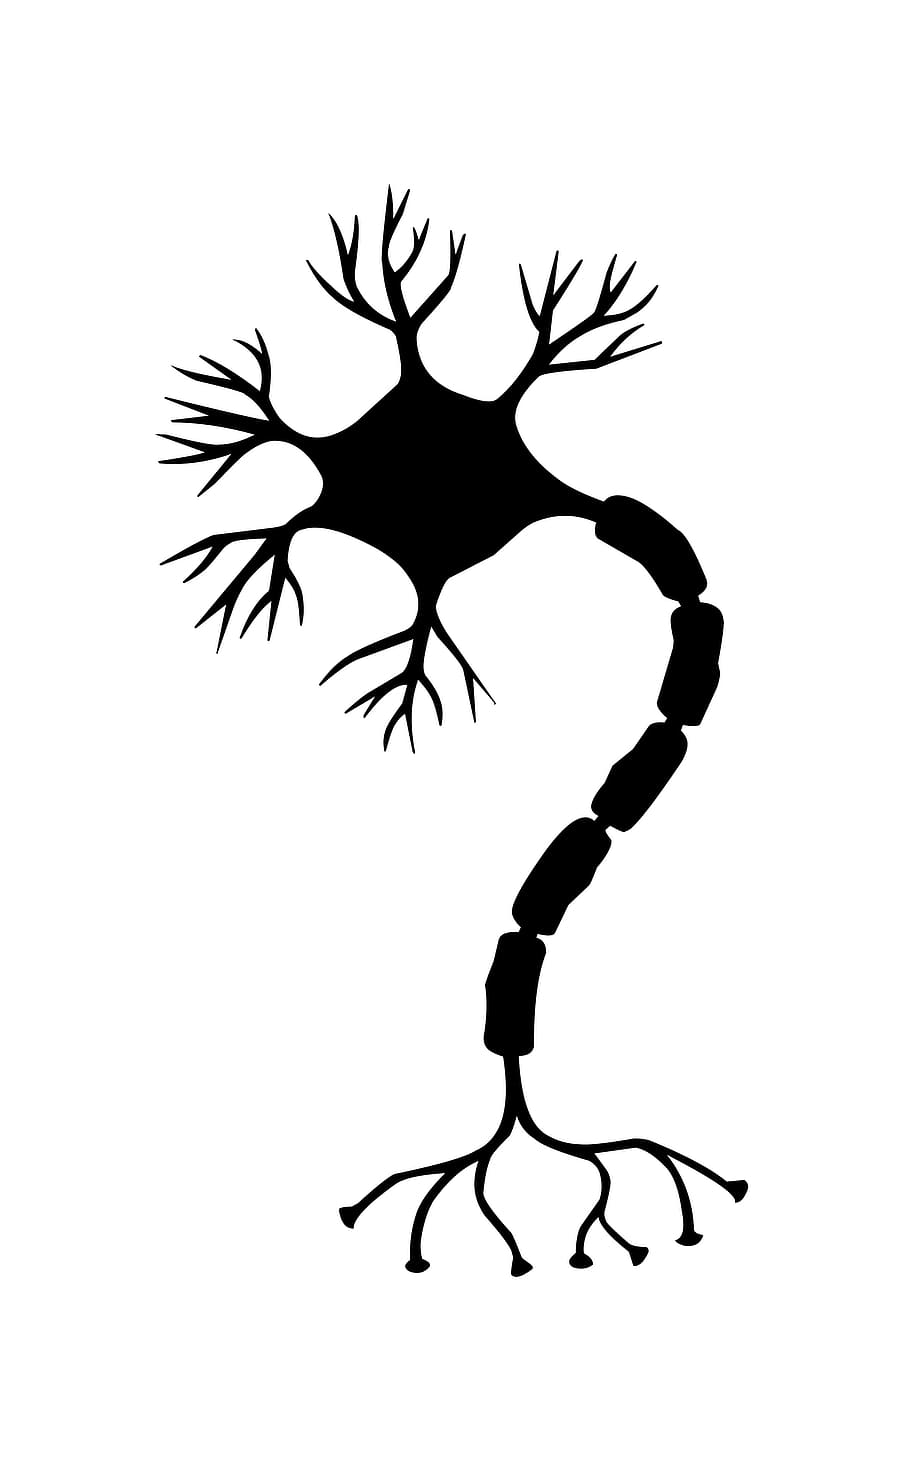 ilustração, célula nervosa, célula., neurônio, cérebro, neurônios, sistema nervoso, sinapse, vias neurais, ribossomo